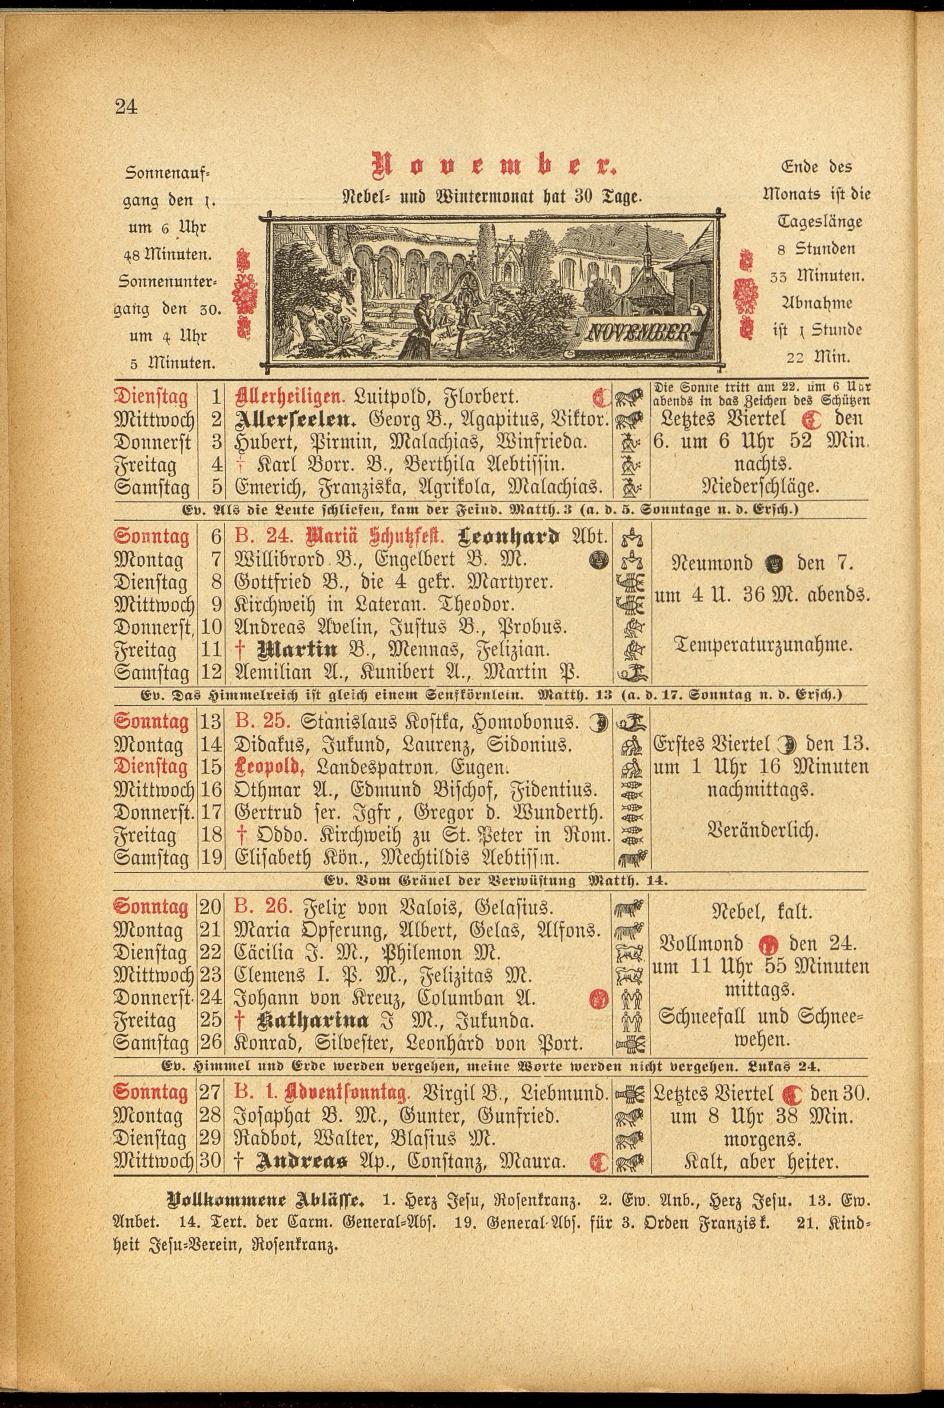 Illustrierter Braunauer-Kalender für das Jahr 1904 - Seite 28